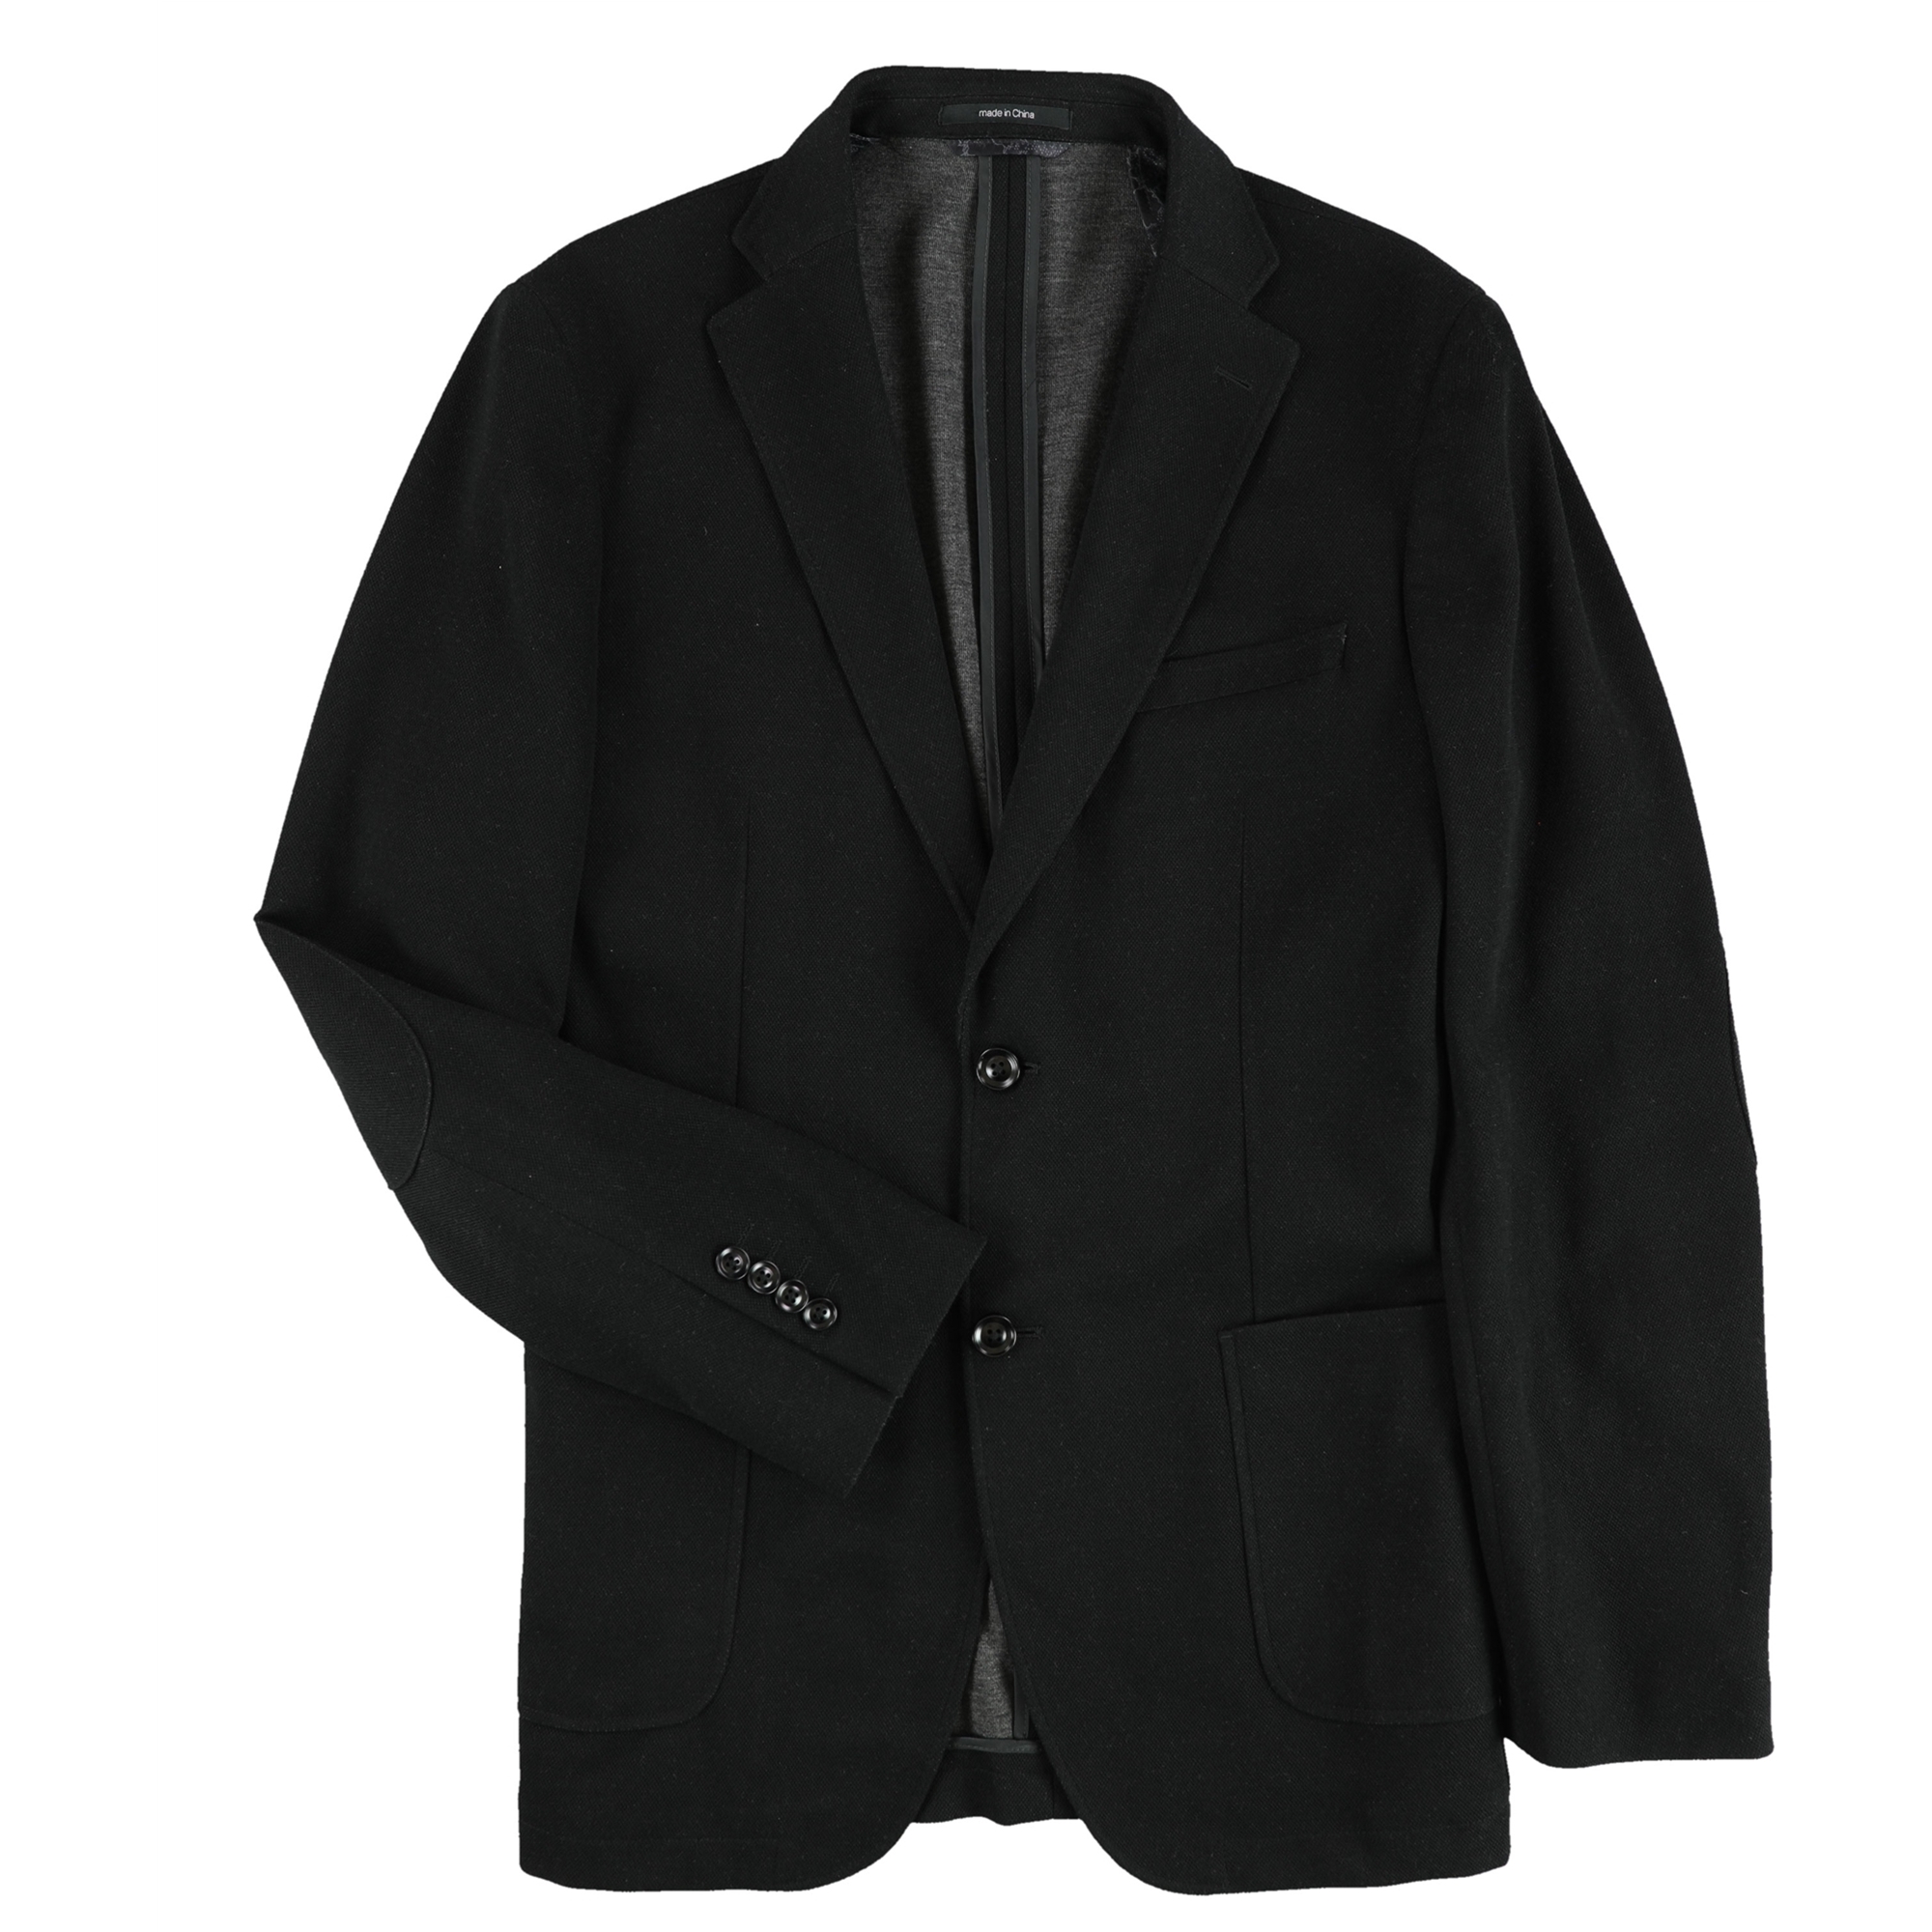 Tommy Hilfiger Mens Ernest Sport Coat, Black, Large 